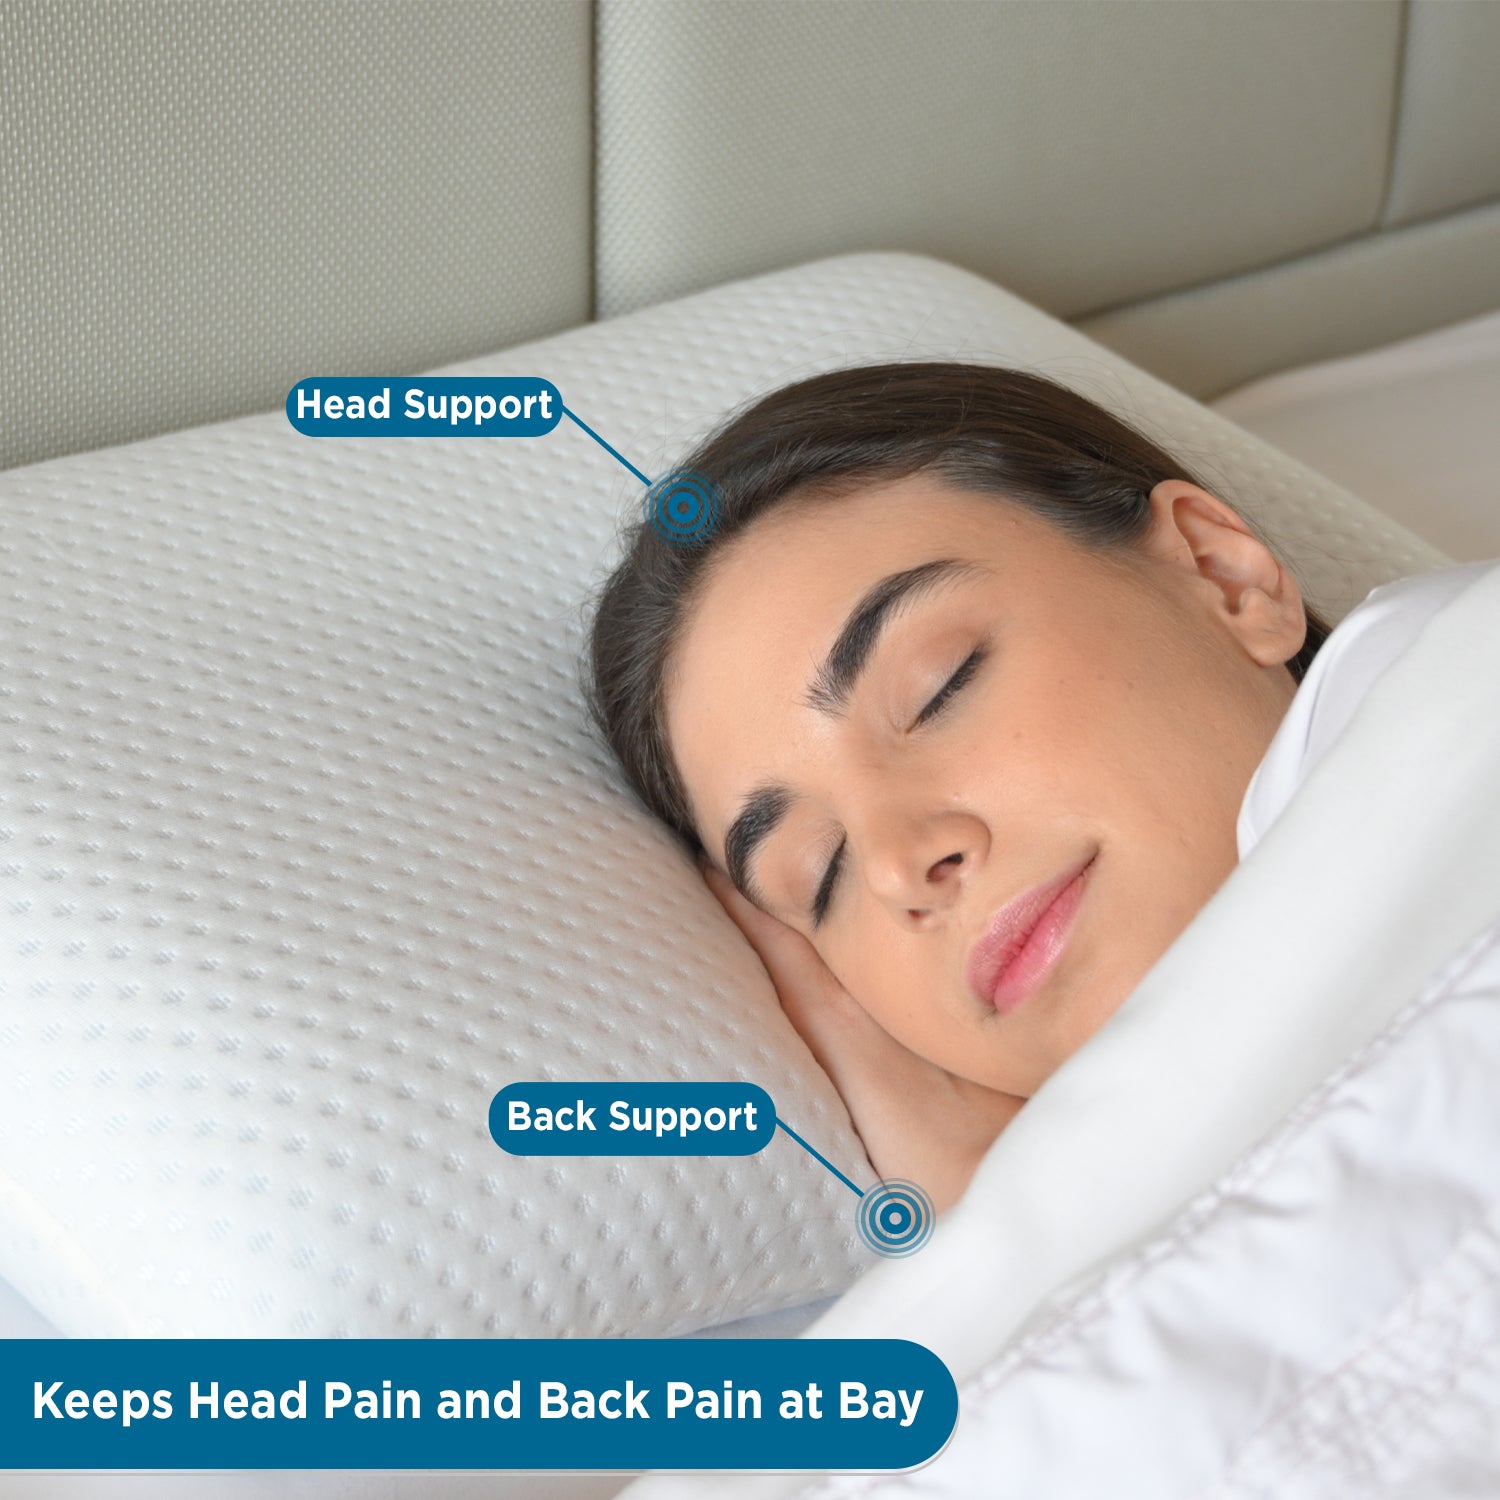 Orthopedic Memory Foam Cervical Pillow